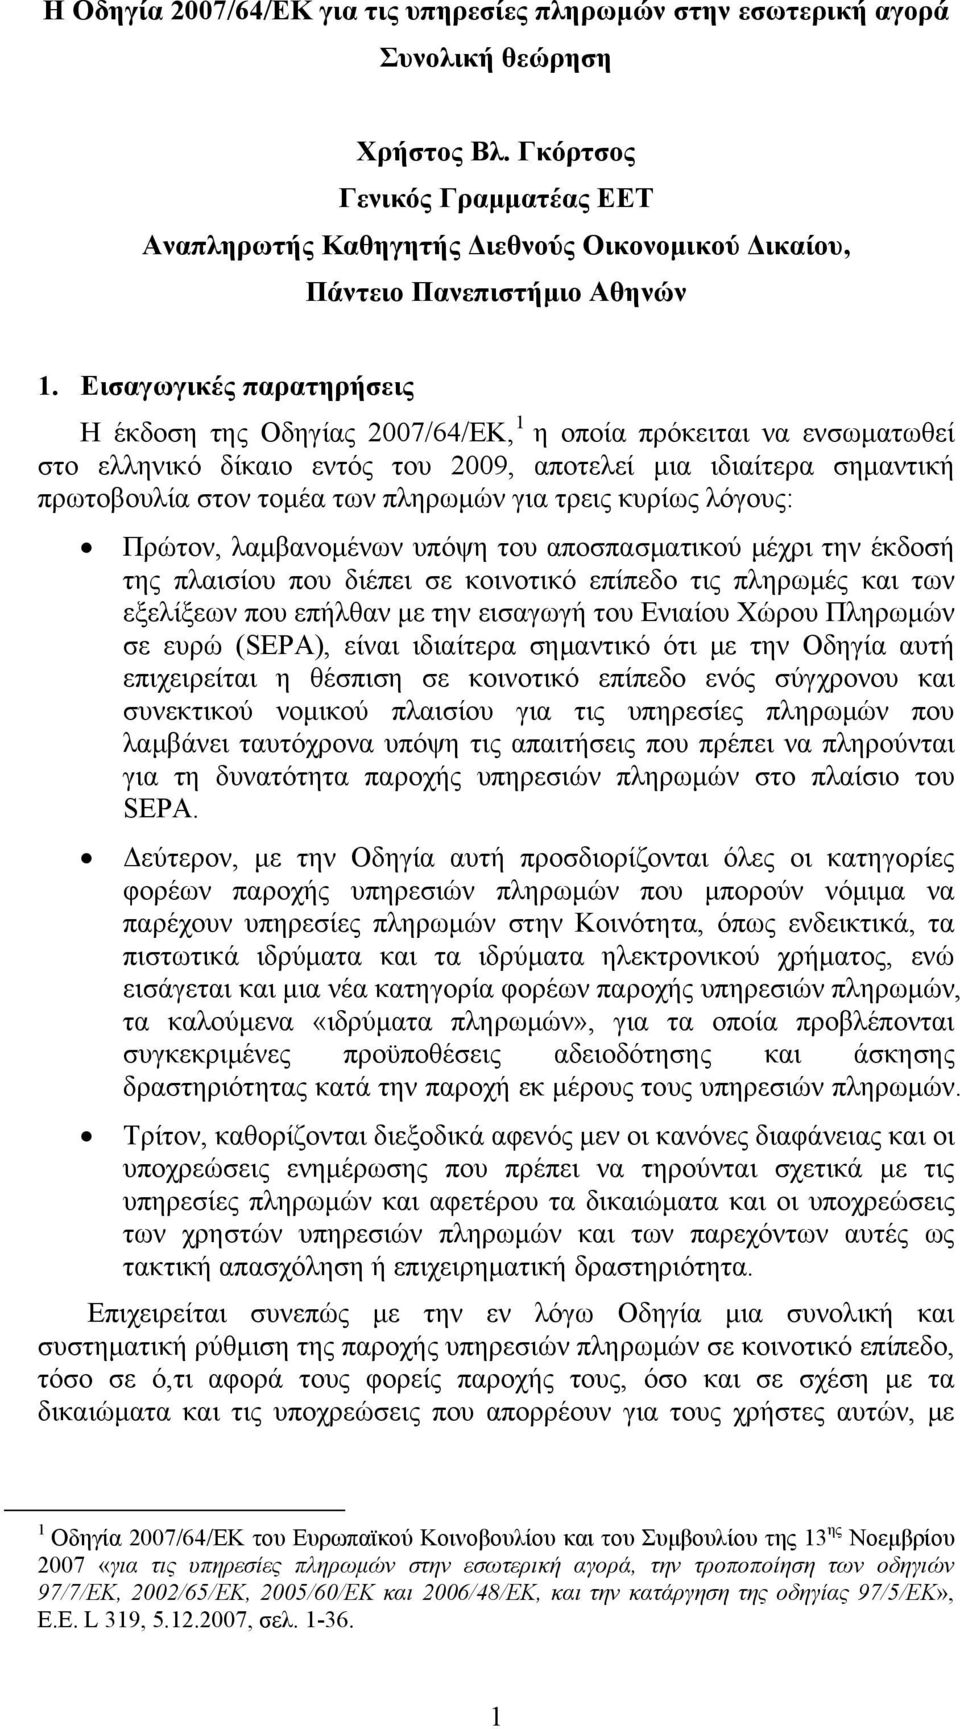 Εισαγωγικές παρατηρήσεις Η έκδοση της Οδηγίας 2007/64/ΕΚ, 1 η οποία πρόκειται να ενσωματωθεί στο ελληνικό δίκαιο εντός του 2009, αποτελεί μια ιδιαίτερα σημαντική πρωτοβουλία στον τομέα των πληρωμών